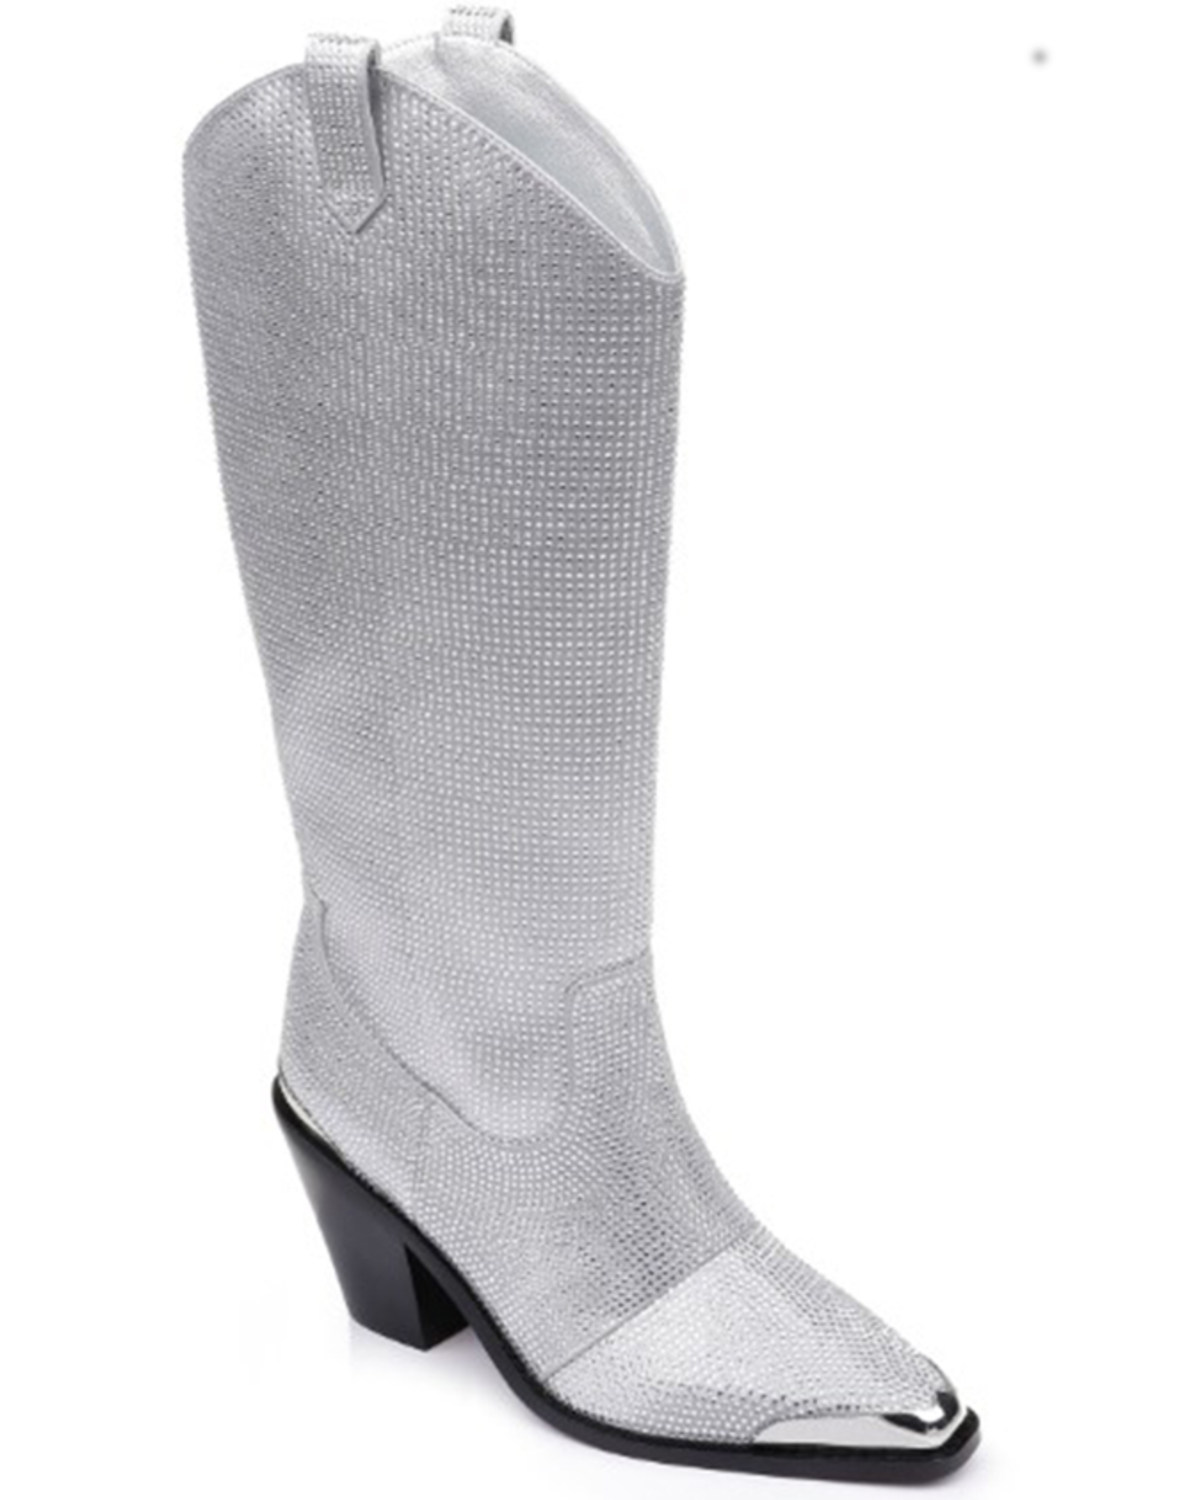 DanielXDiamond Women's North Jewel Cave Tall Western Boots - Snip Toe